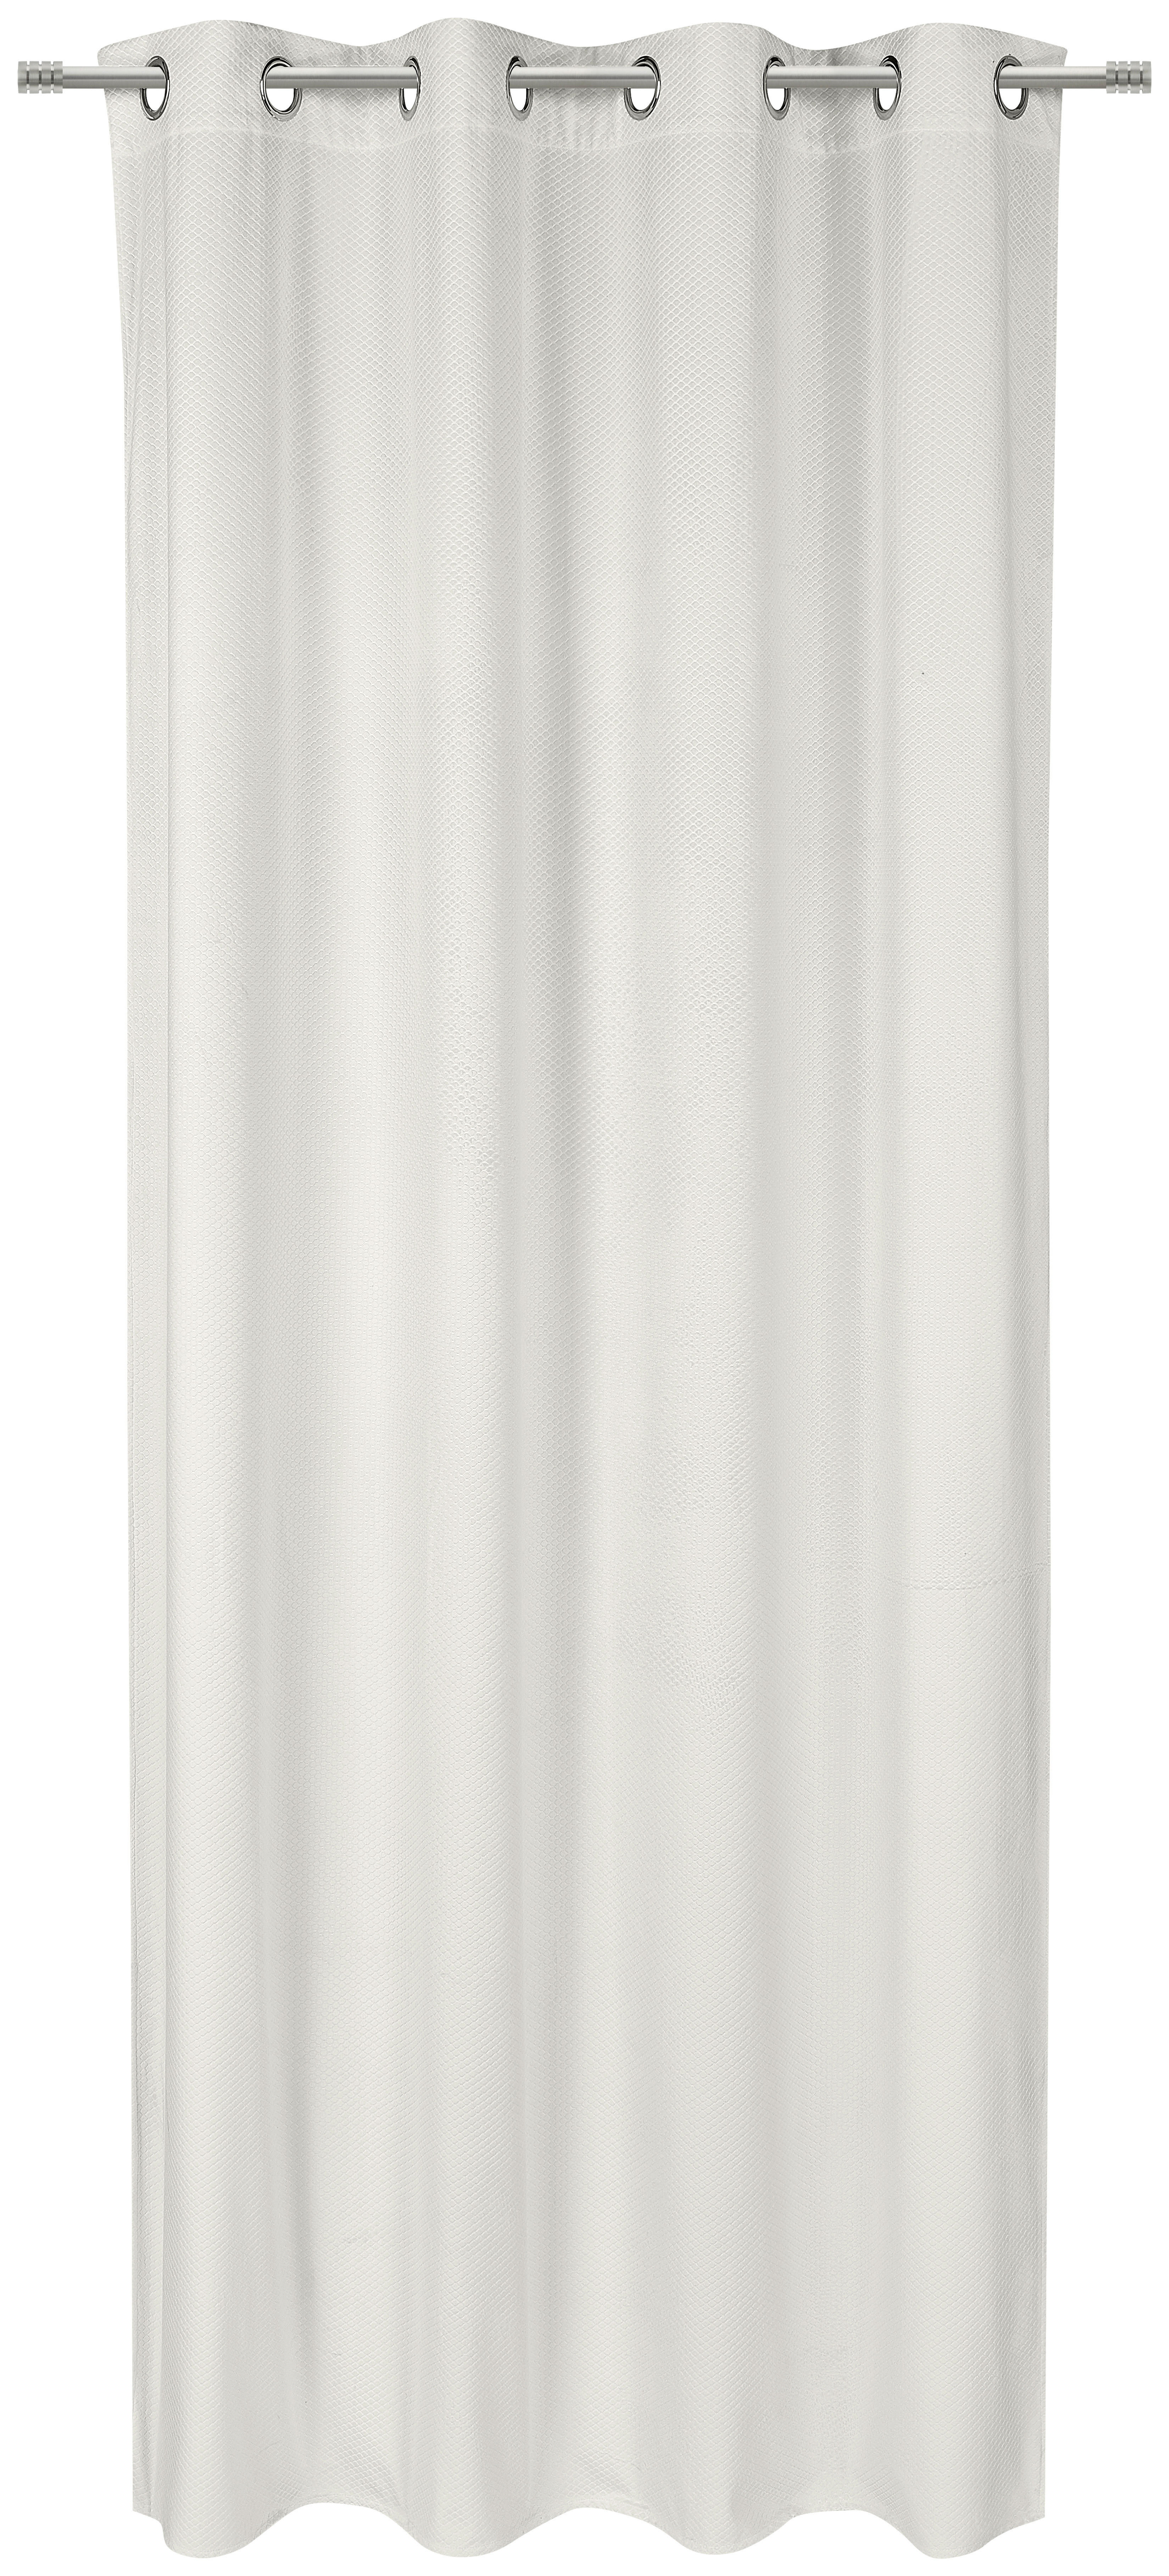 RINGLIS FÜGGÖNY Részben fényzáró  - Fehér, Konventionell, Textil (140/245cm) - Esposa